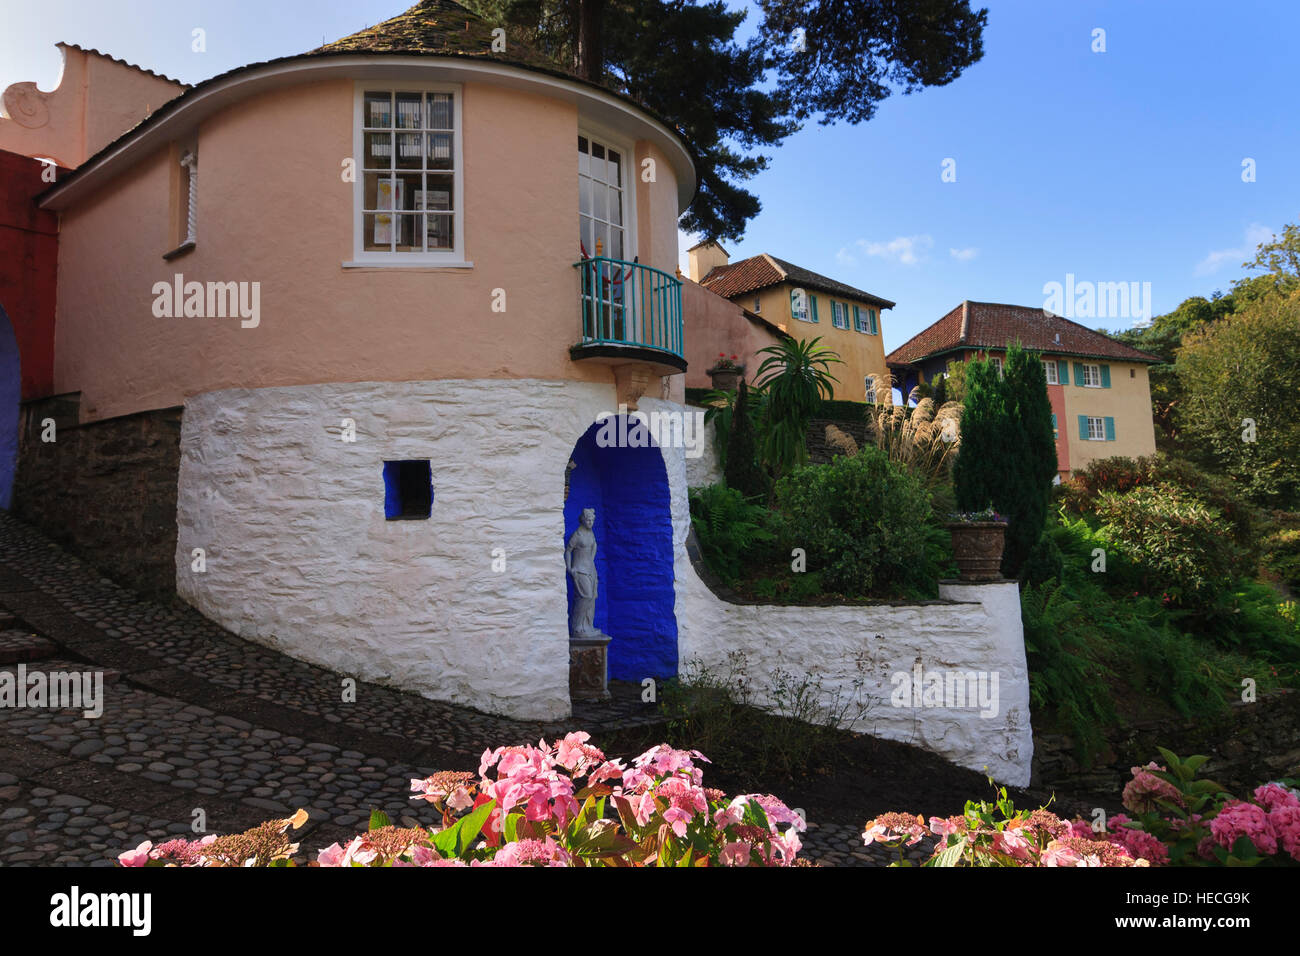 La maison ronde, utilisé pour aucun 6's cottage dans le prisonnier série télé, à l'Italienne Portmeiron village dans le Nord du Pays de Galles Banque D'Images